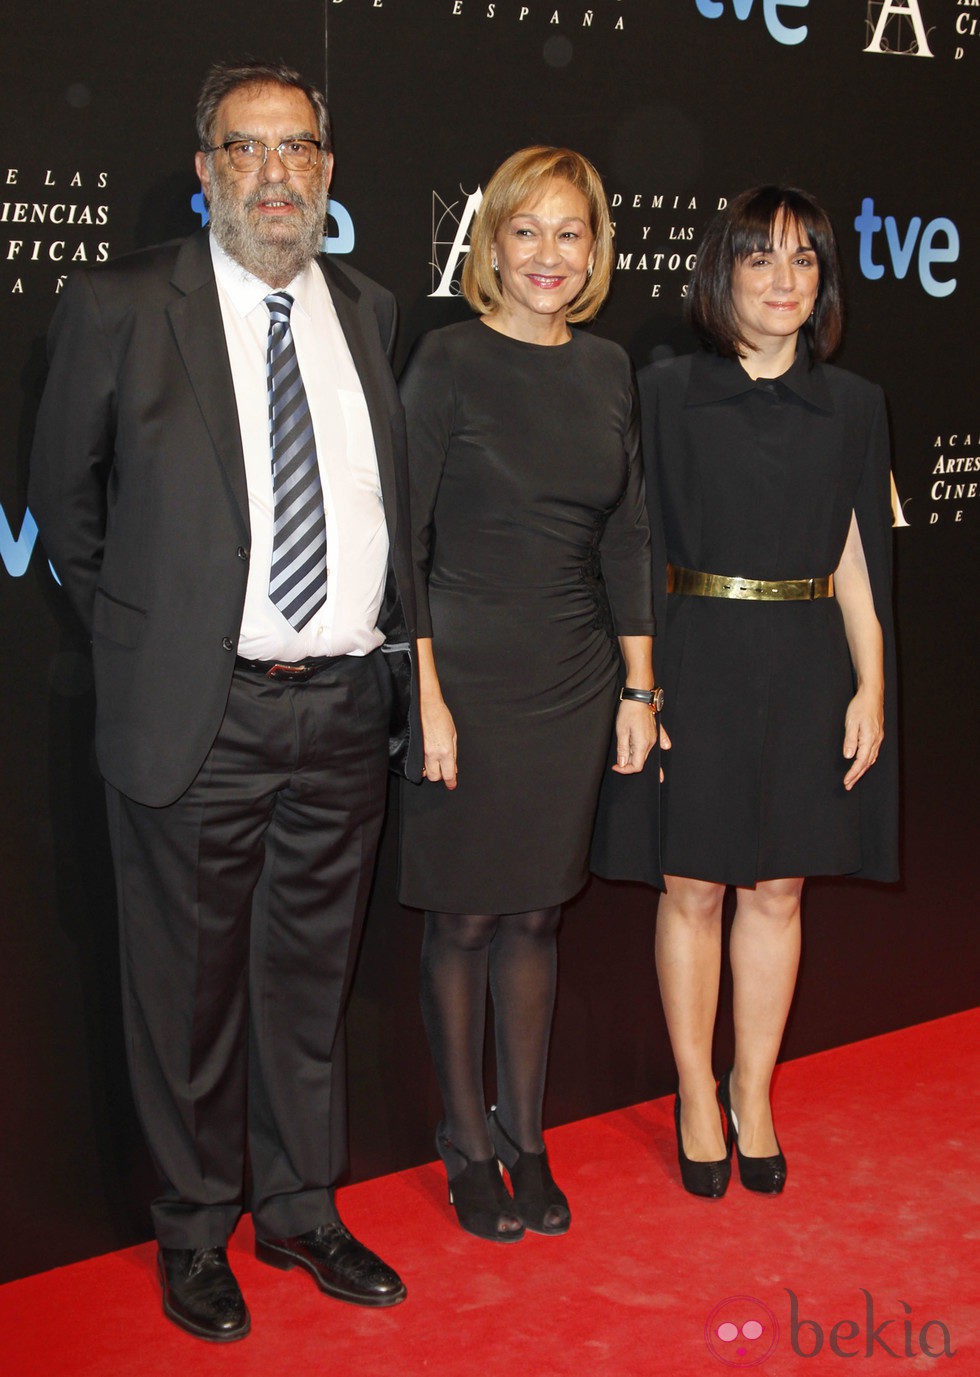 Enrique González Macho en entrada de la cena de los nominados a los Goya 2013